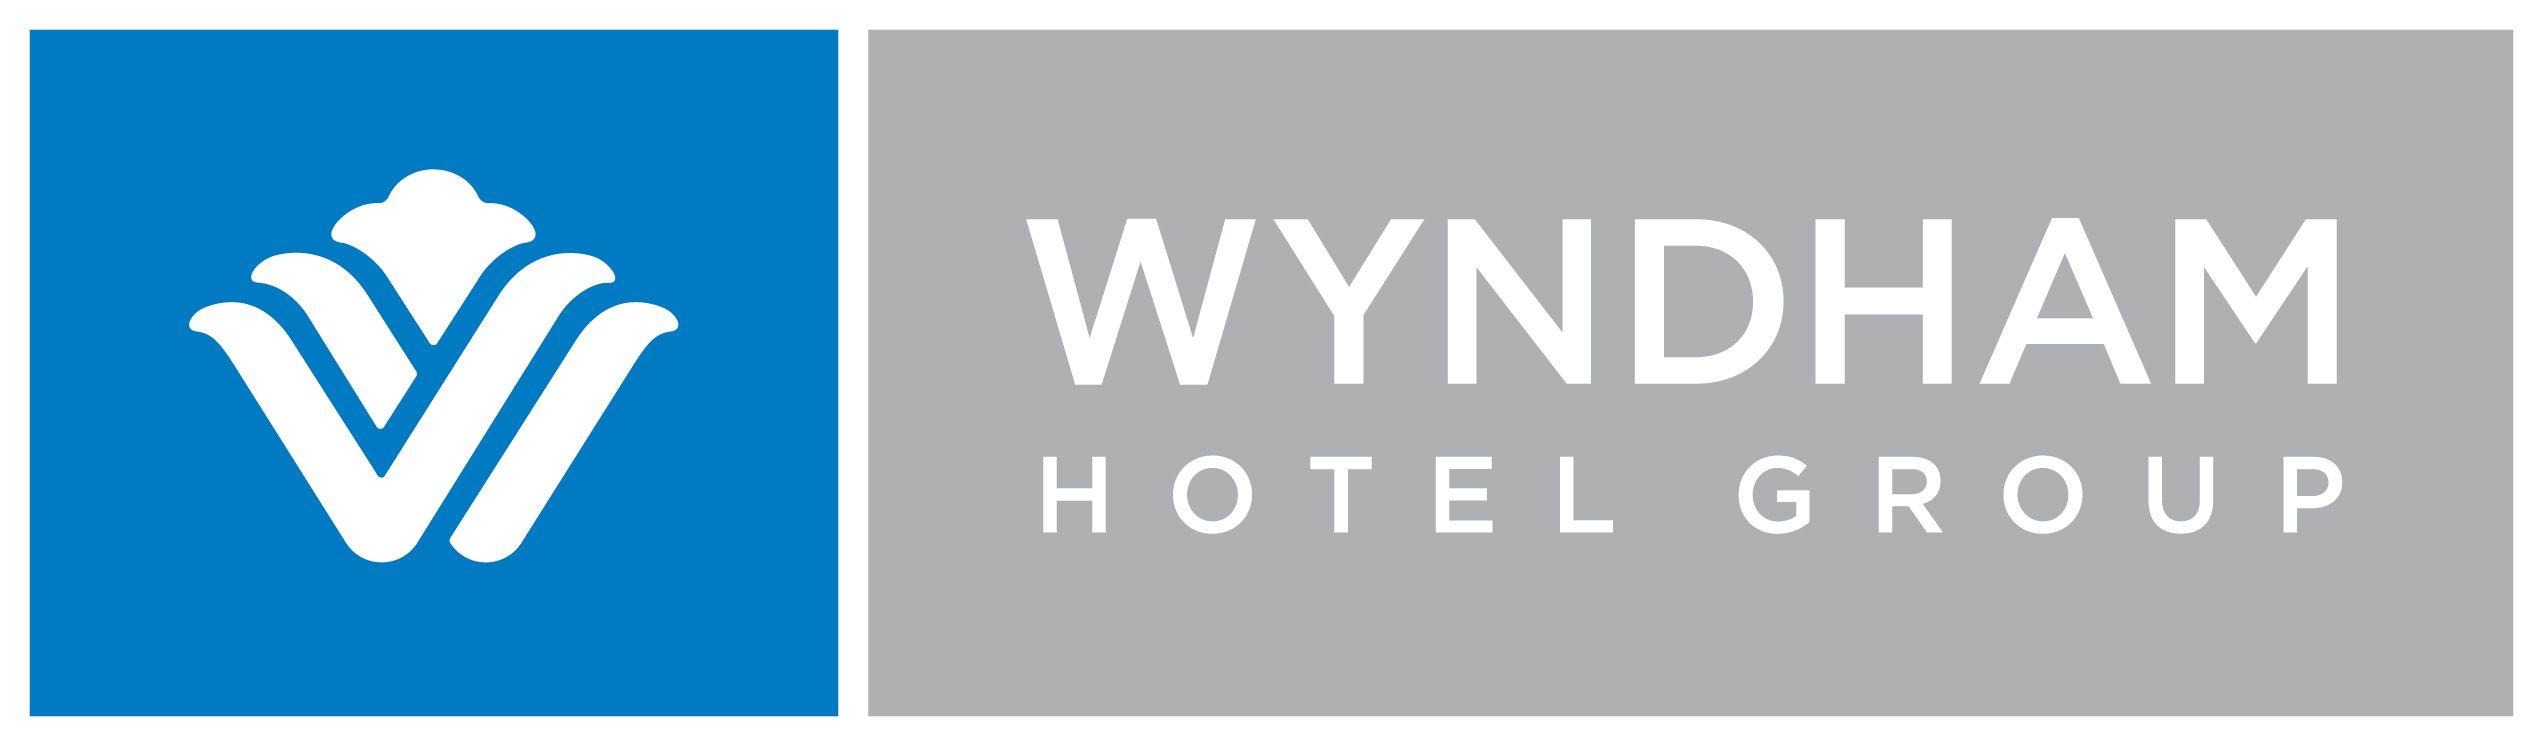 Wyndham Logo - Wyndham Hotel Group logo «